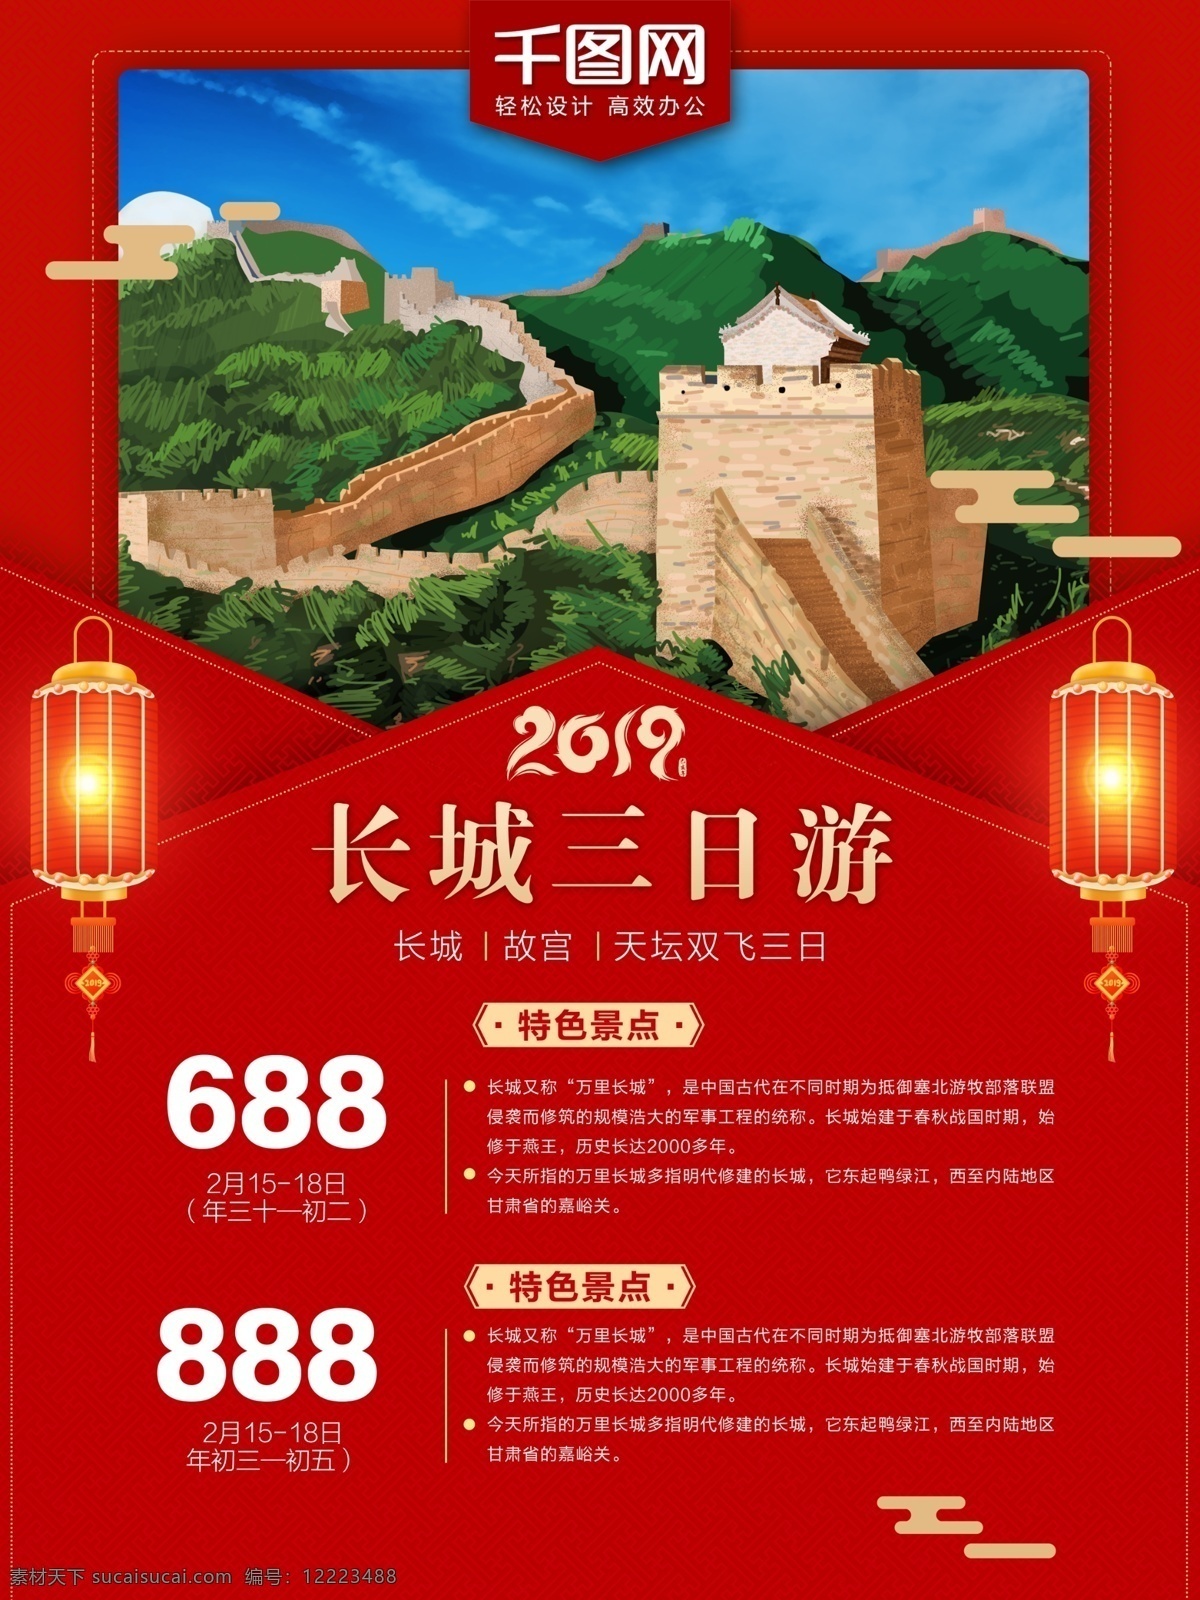 2019 新年 长城 旅游 商业 海报 长城旅游 旅游海报 新年长城旅游